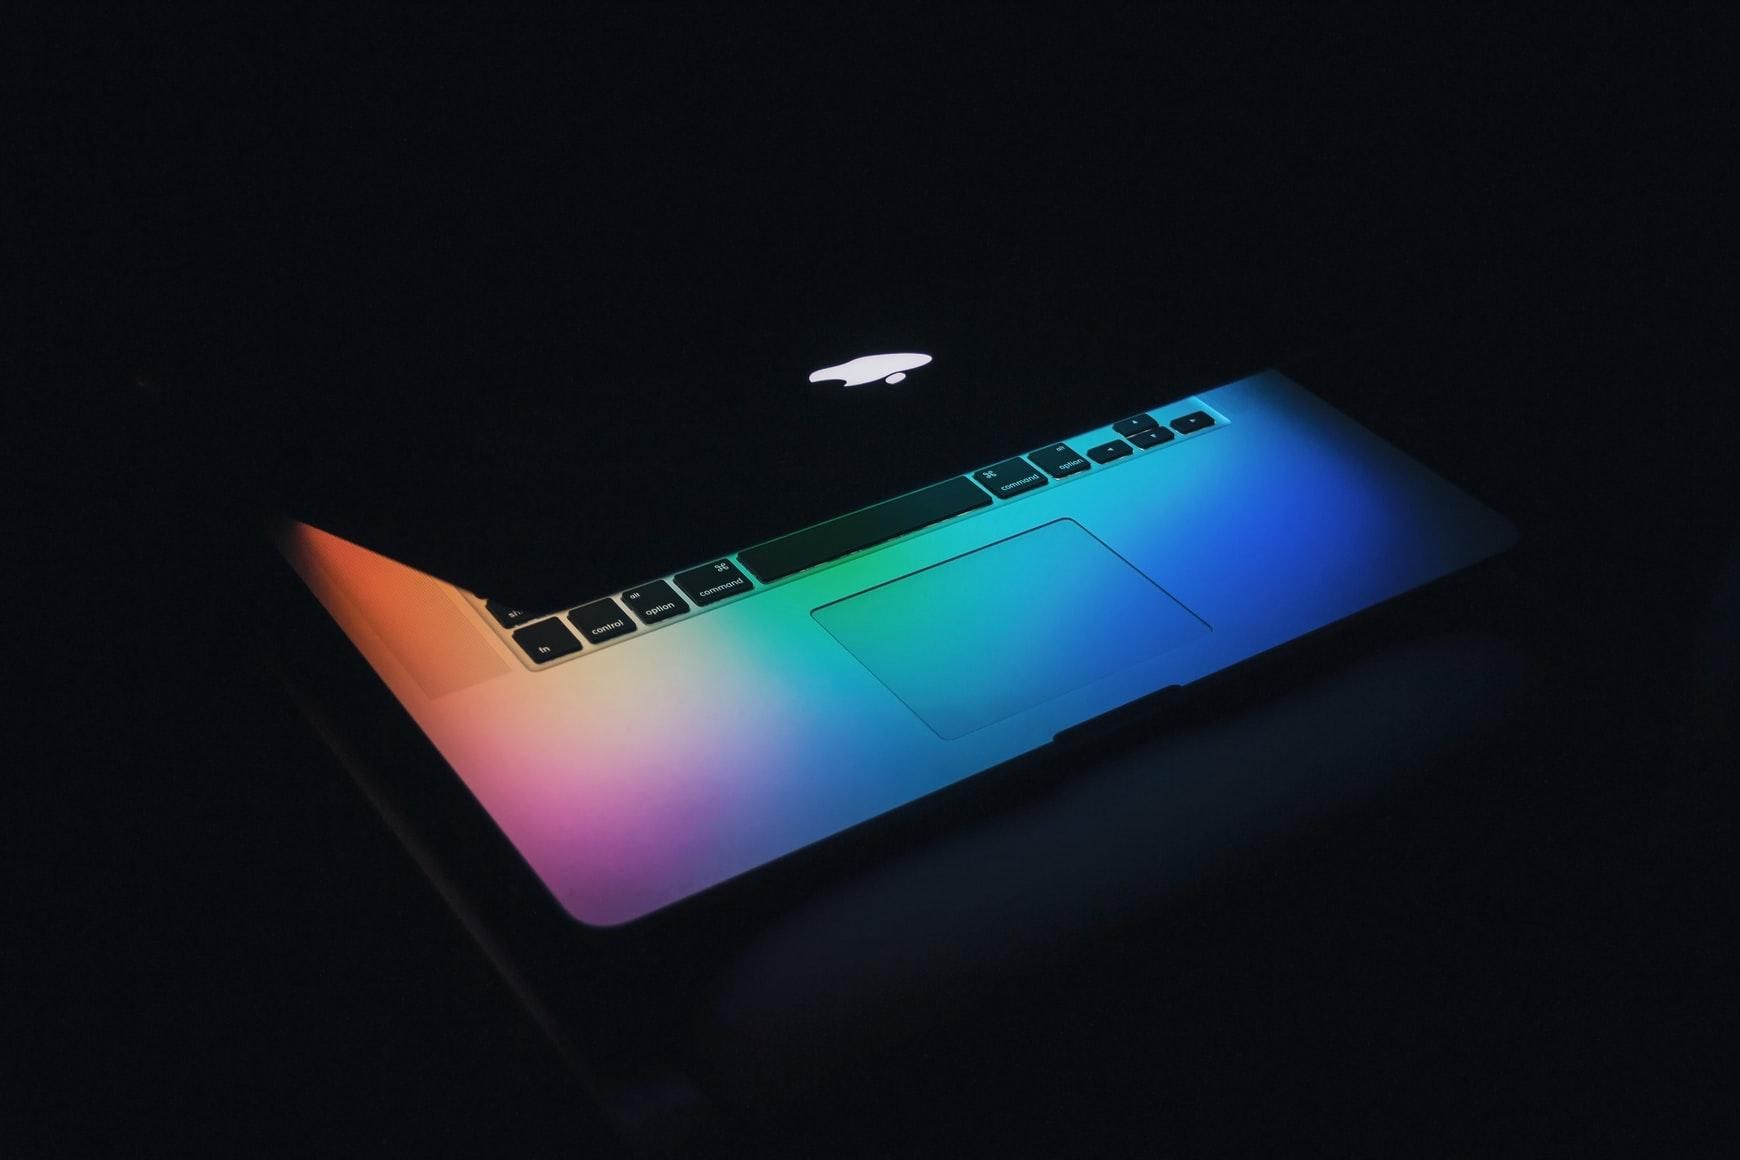 Користувачі Mac під загрозою: хакери стали активніше атакувати комп'ютери Apple - Новини технологій - Техно